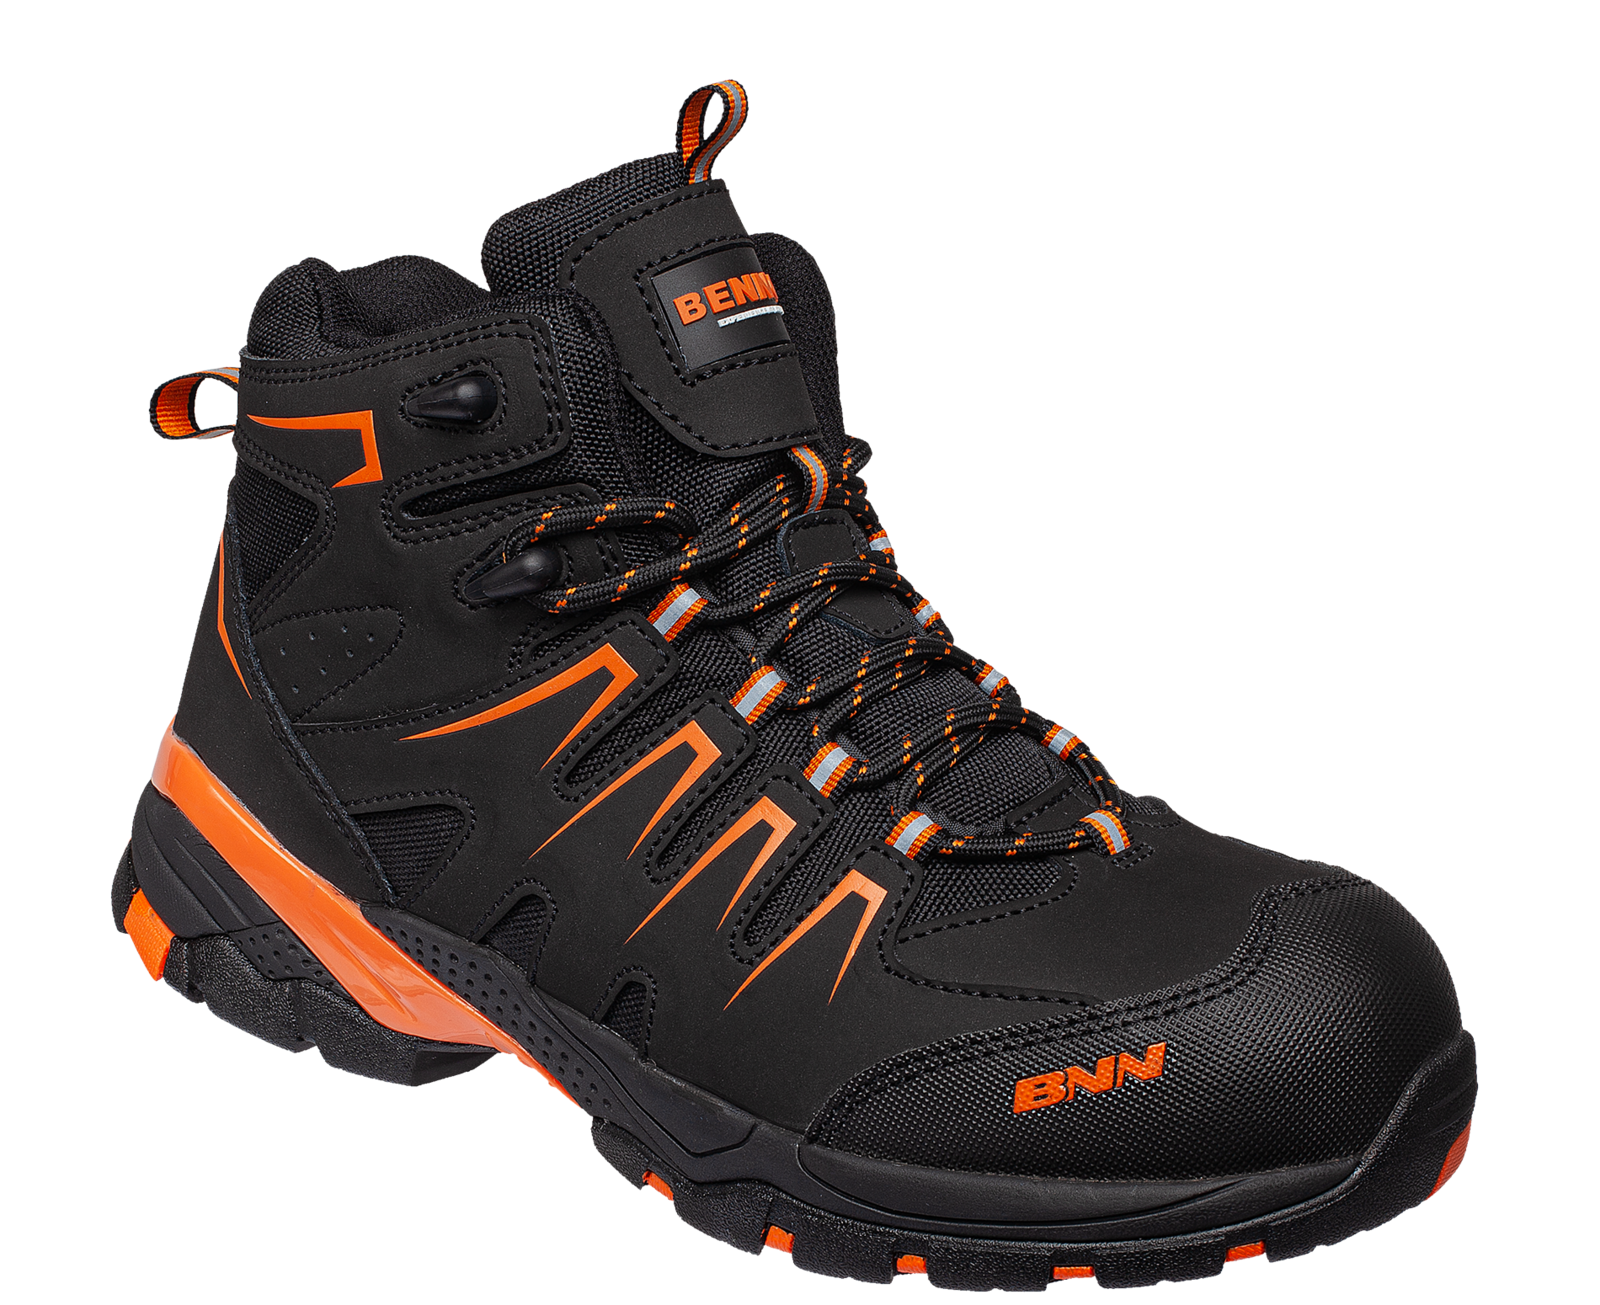 Bezpečnostná členková obuv Bennon Orlando XTR S3 NM High - veľkosť: 40, farba: čierna/oranžová